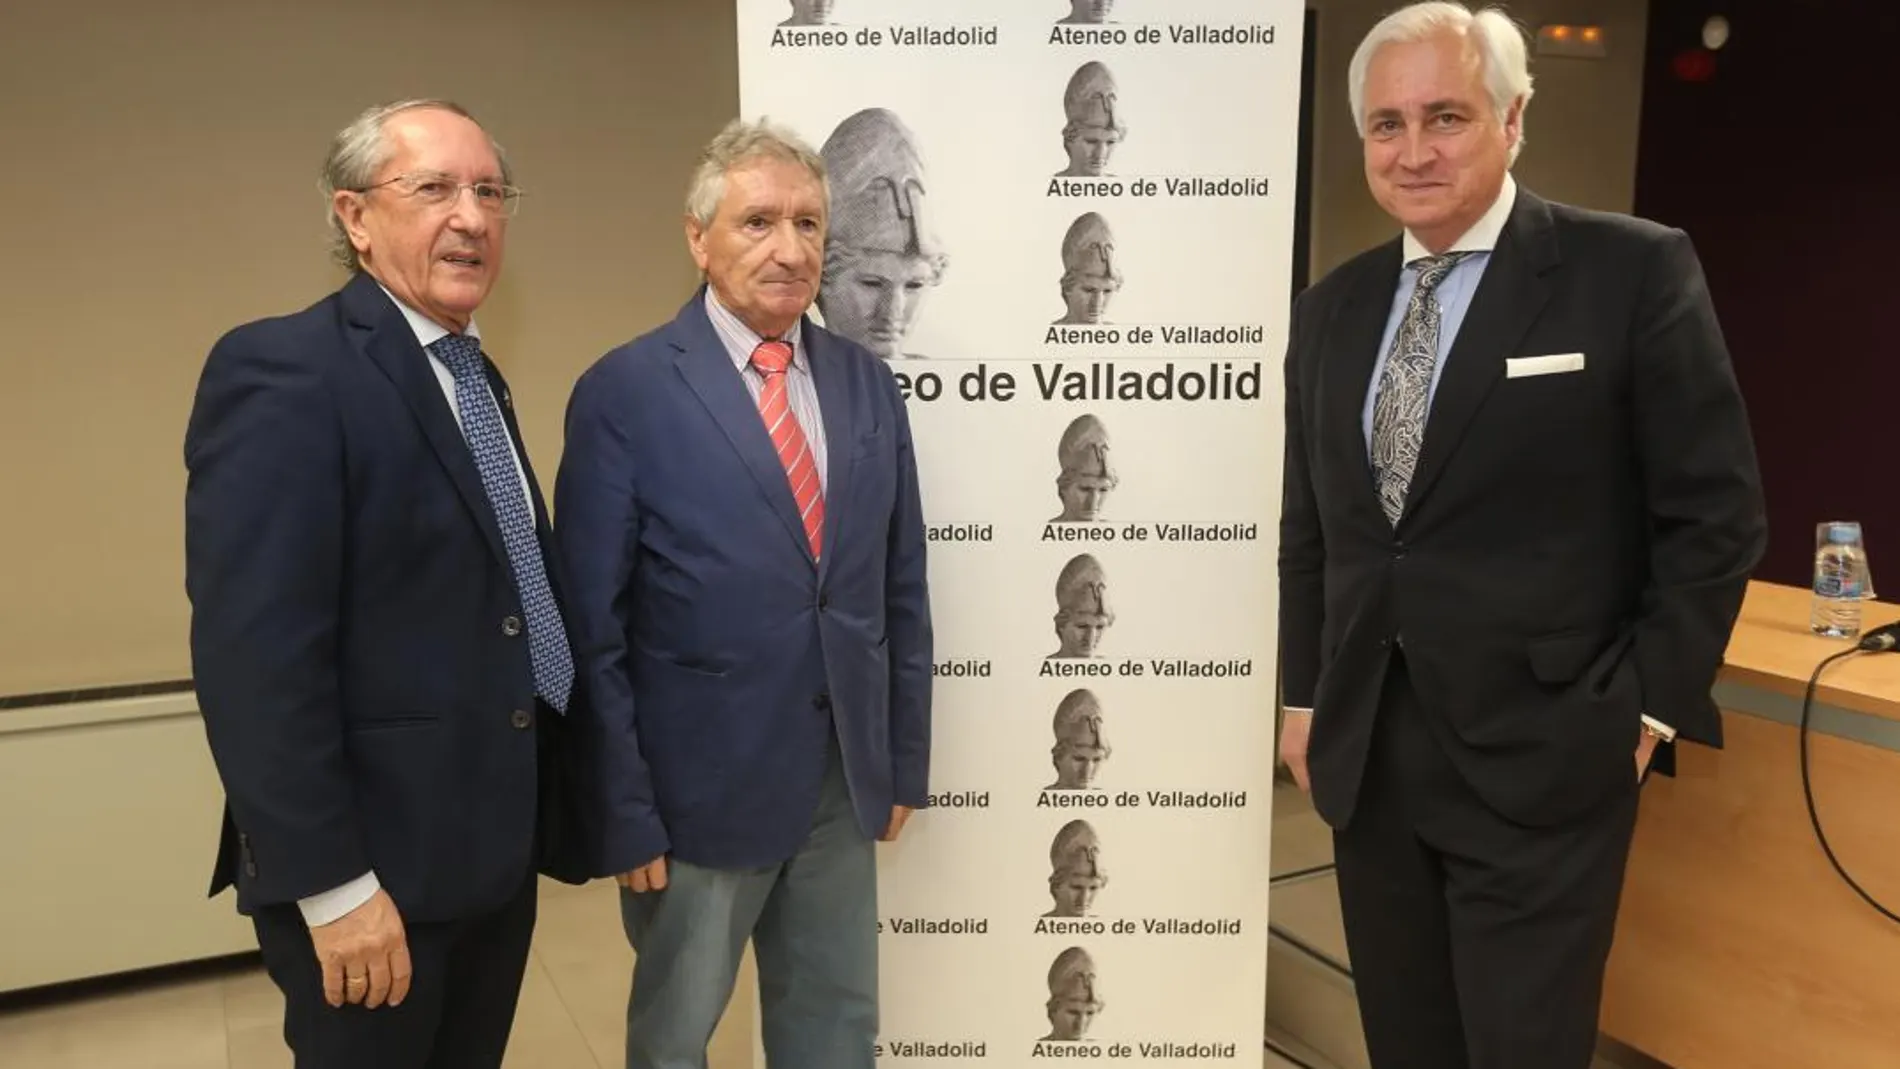 Felicia Trebolle, Celso Almuiña y José Luis Concepción en el foro del Ateneo de Valladolid / Dos Santos